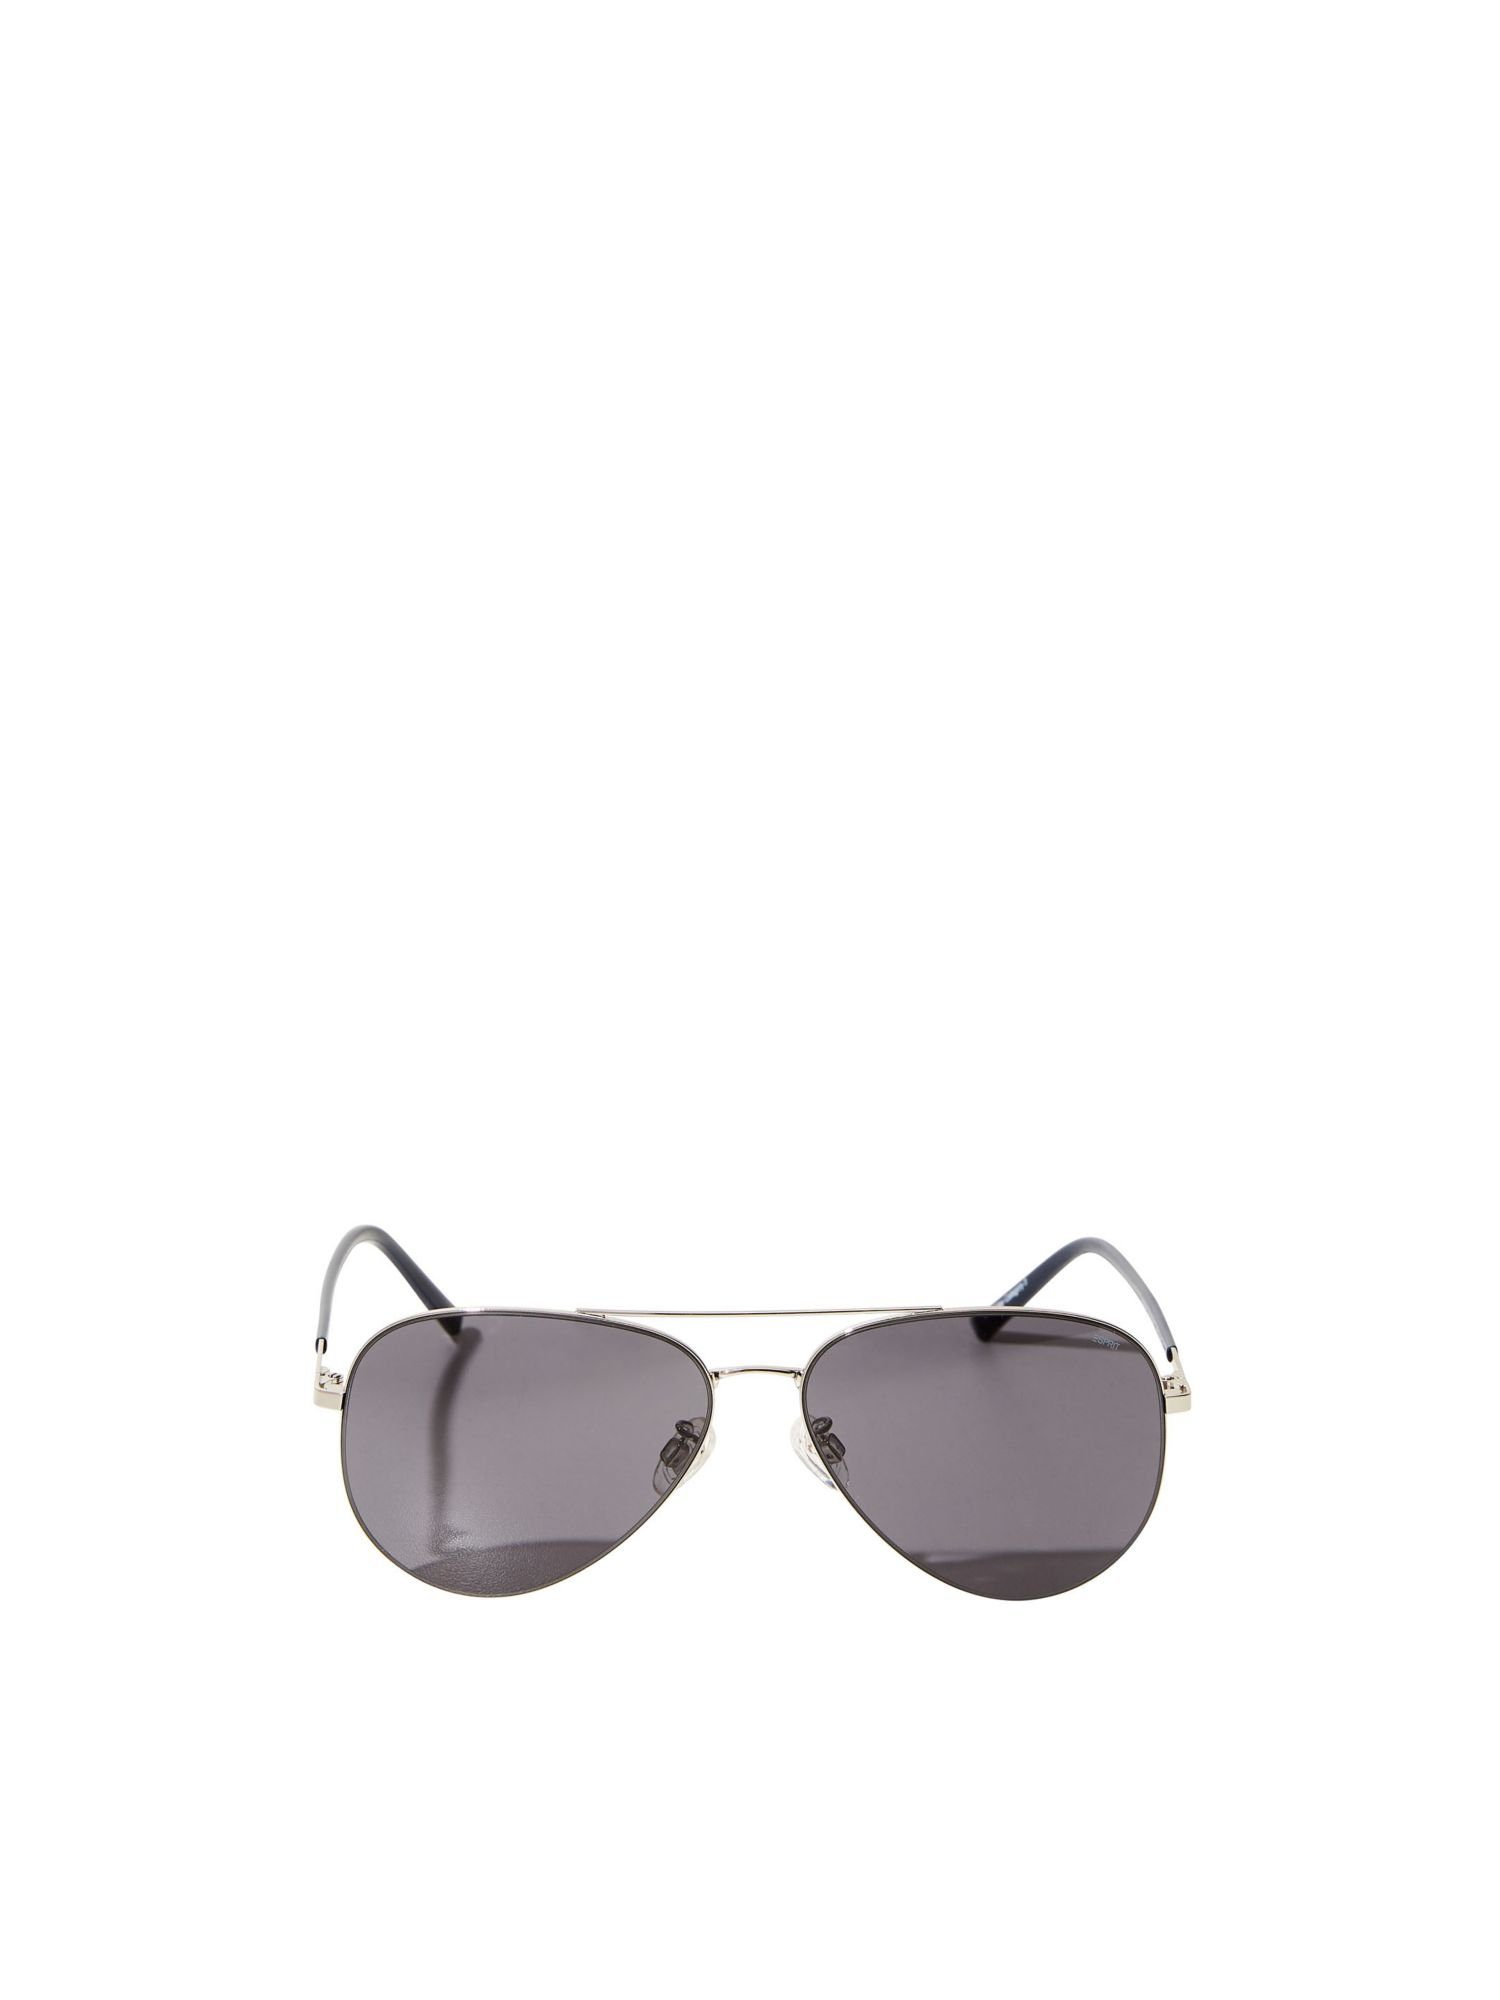 Esprit Sonnenbrille »Piloten-Sonnenbrille« kaufen | OTTO